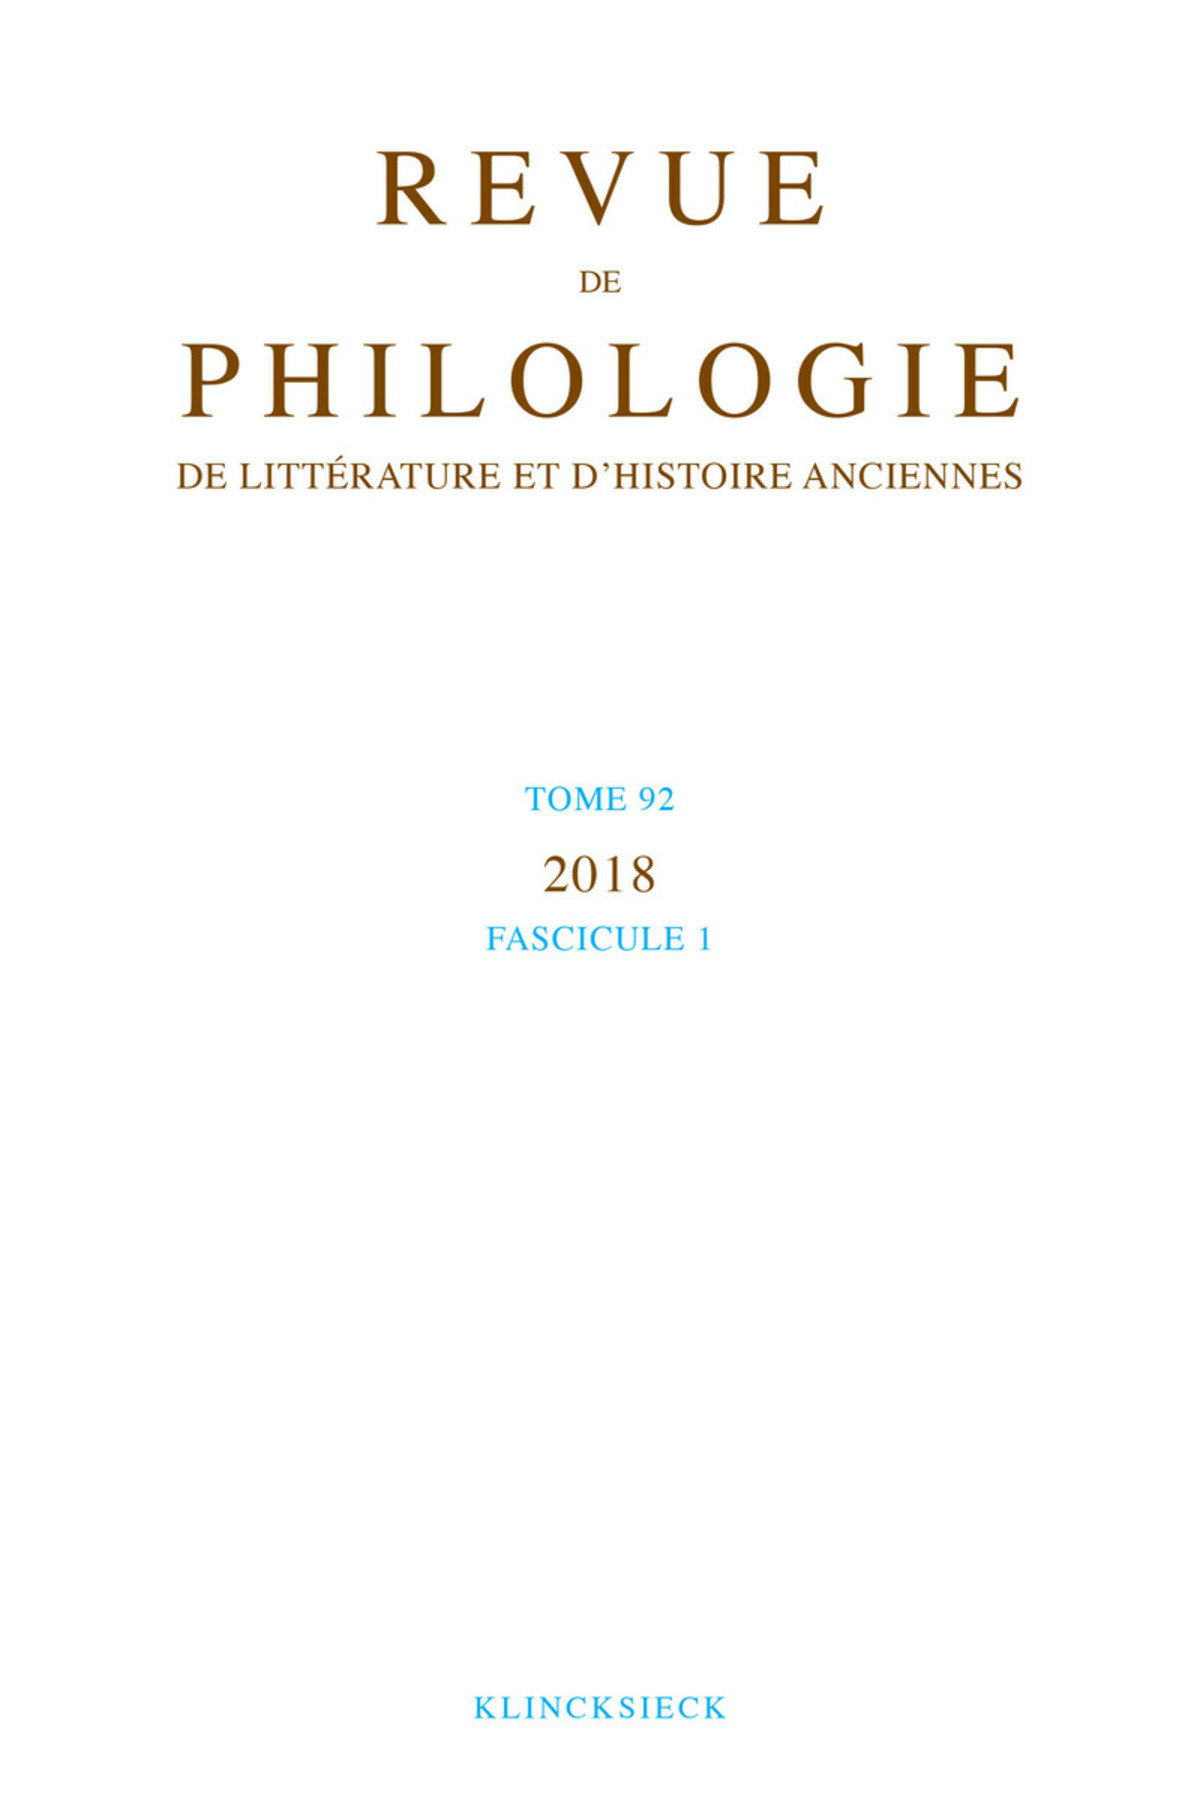 Revue de philologie, de littérature et d'histoire anciennes volume 92-1